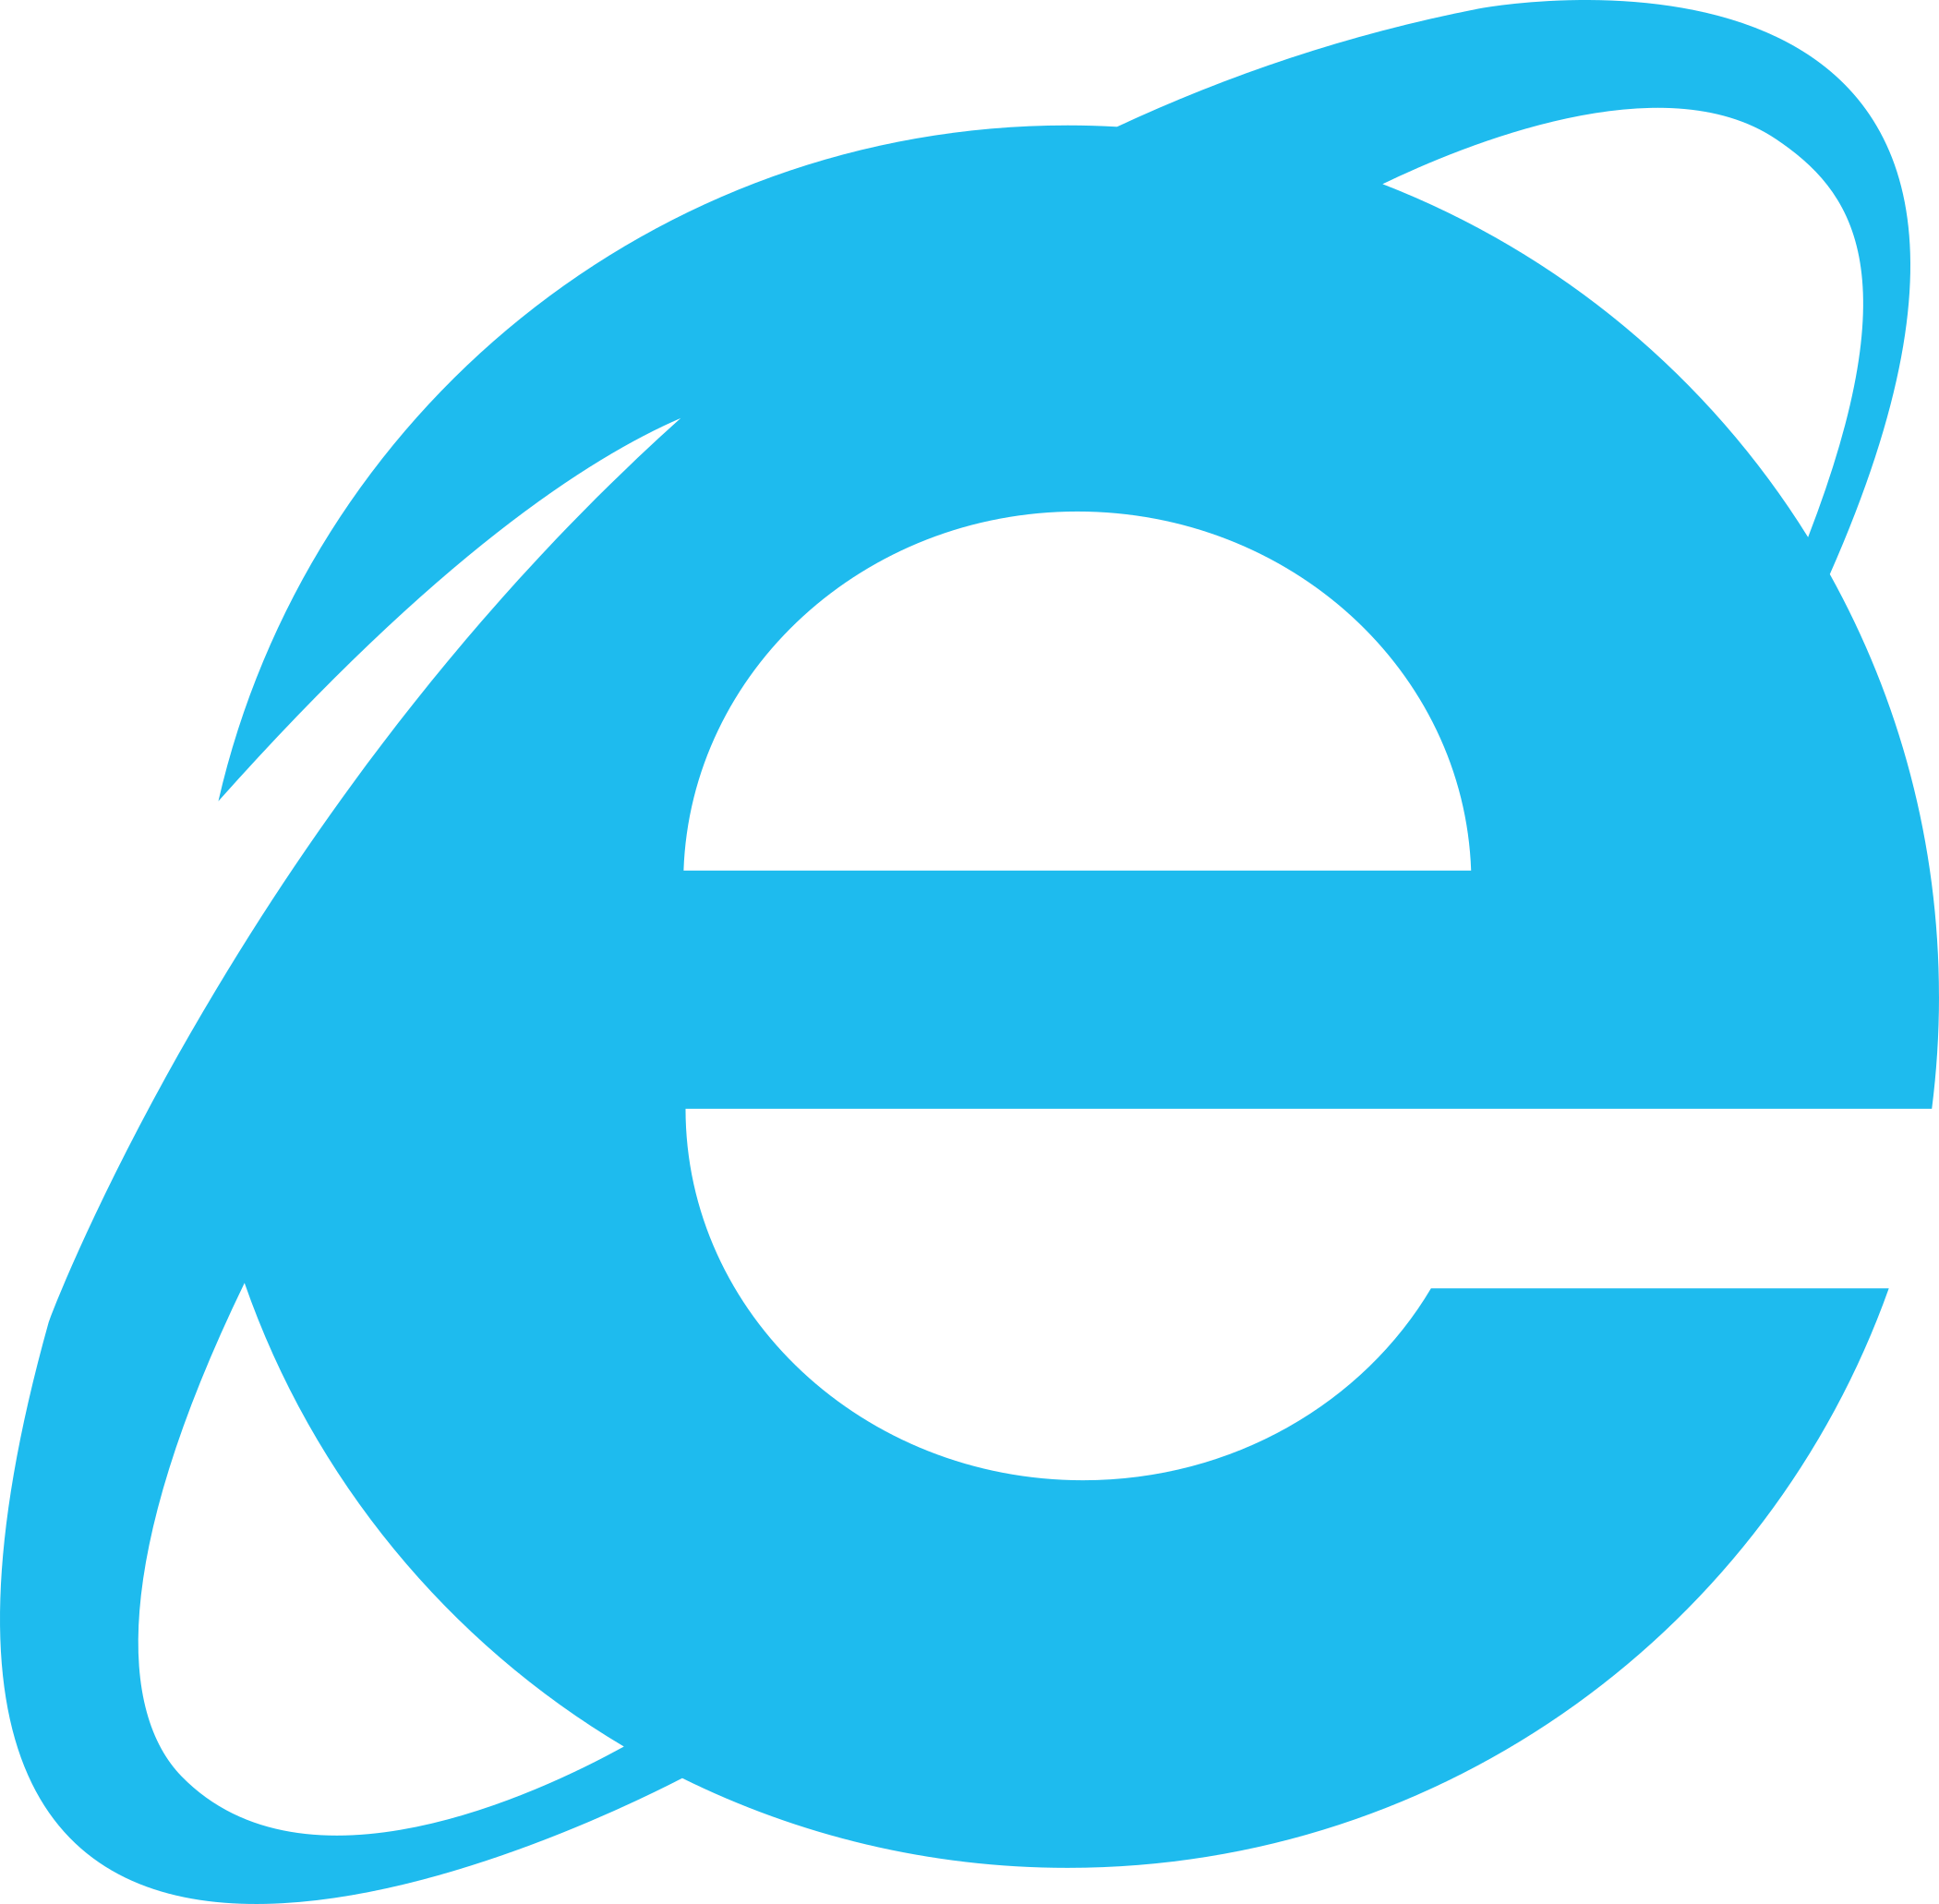 Internet Explorer logo, ie logo.